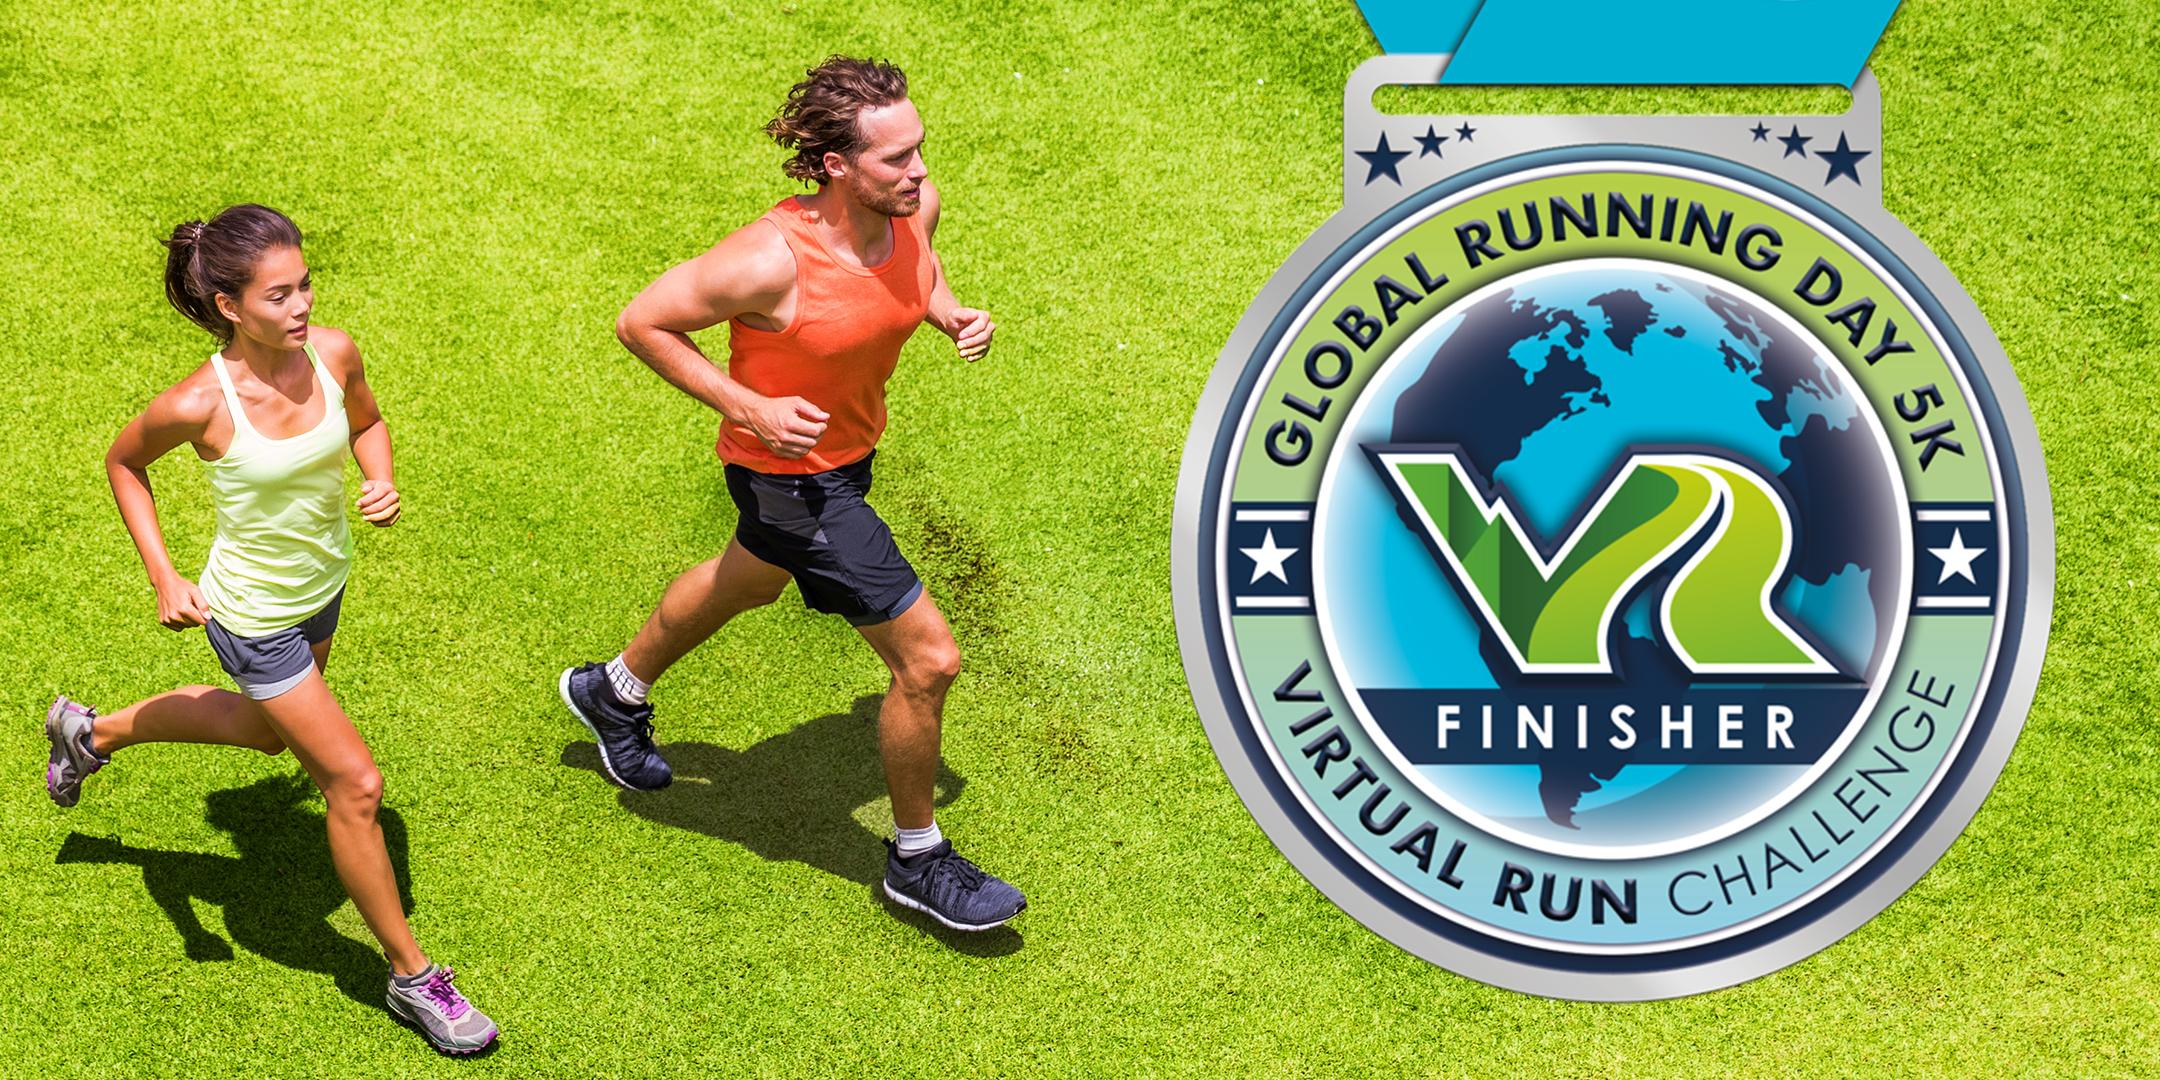 2020 Global Running Day Free Virtual 5k - Lansing